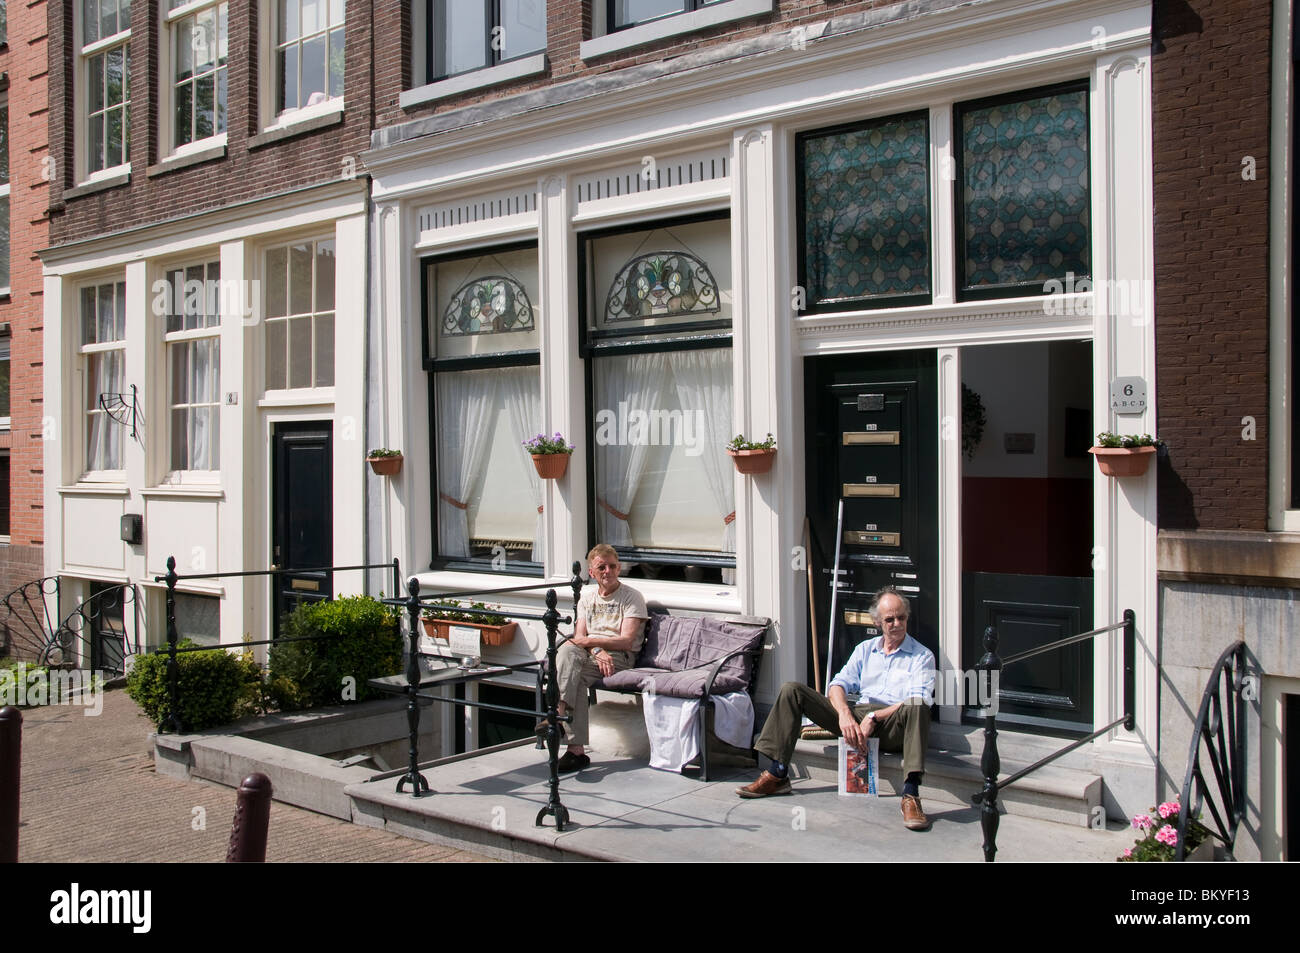 Hollande Amsterdam Jordaan canal Prinsengracht chambre deux vieillards dans le soleil Banque D'Images